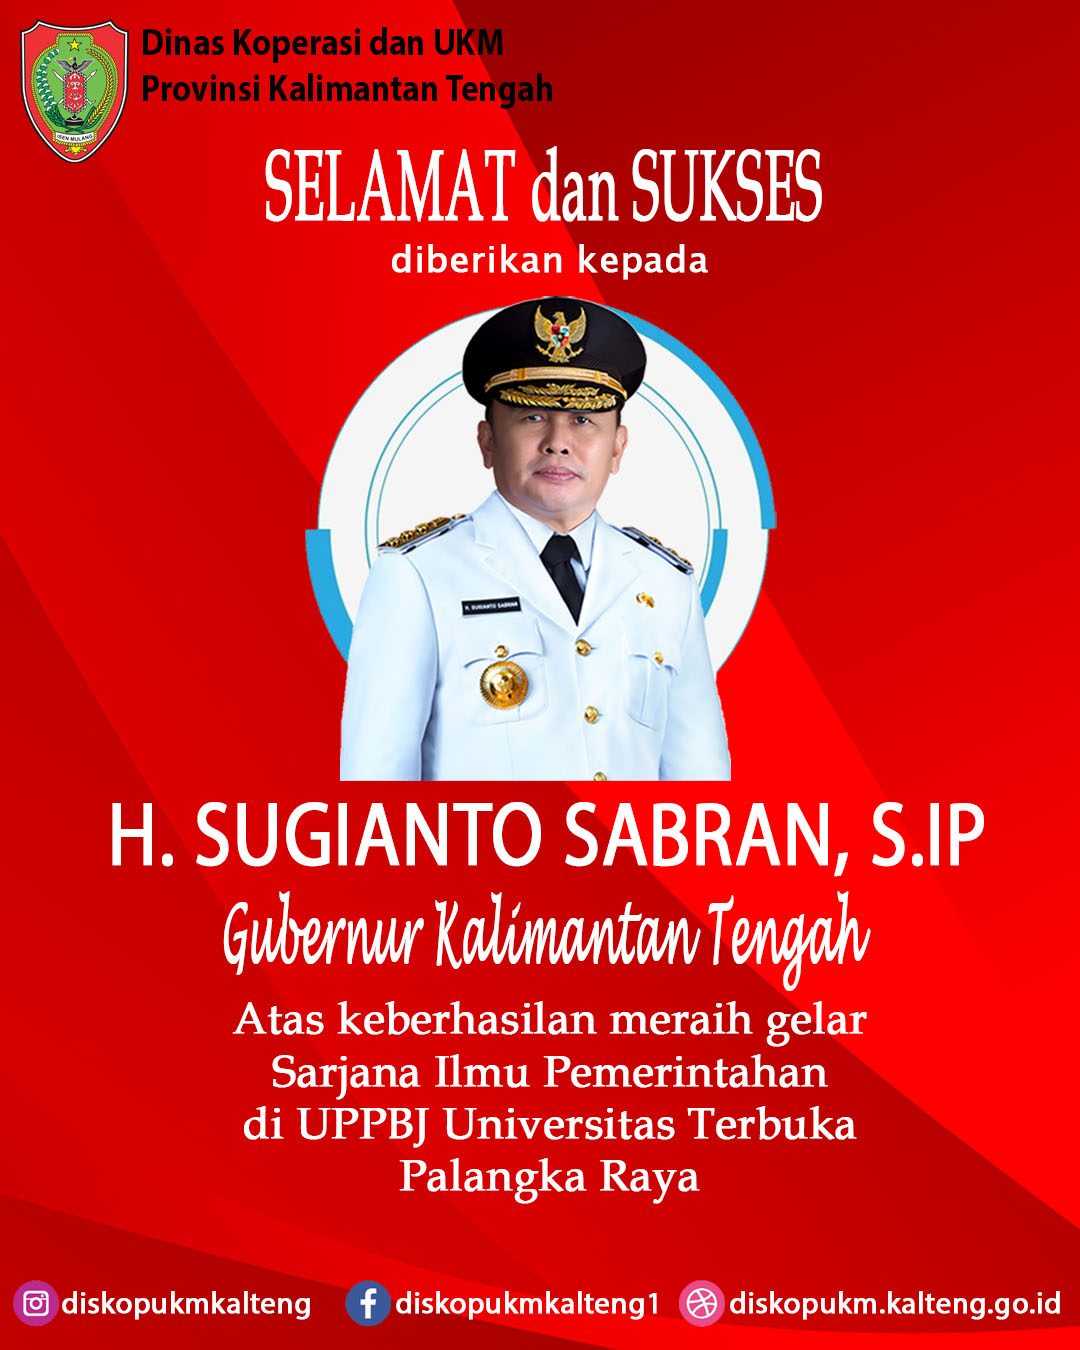 Selamat dan Sukses diberikan kepada Gubernur Kalimantan Tengah Bapak H. SUGIANTO SABRAN, S.IP